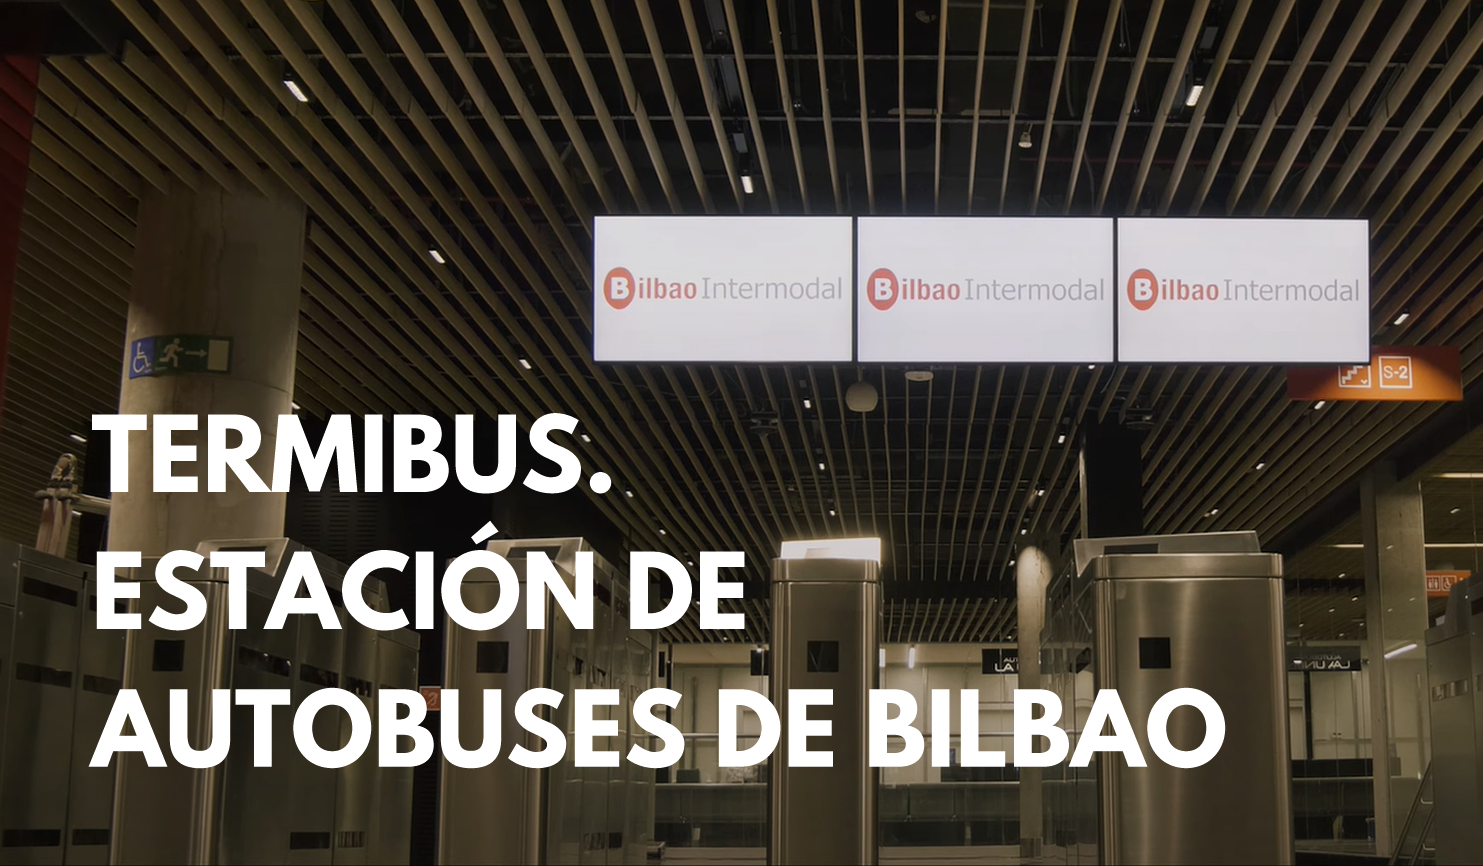 Visita virtual a la Estacion de autobuses de Bilbao. Termibus